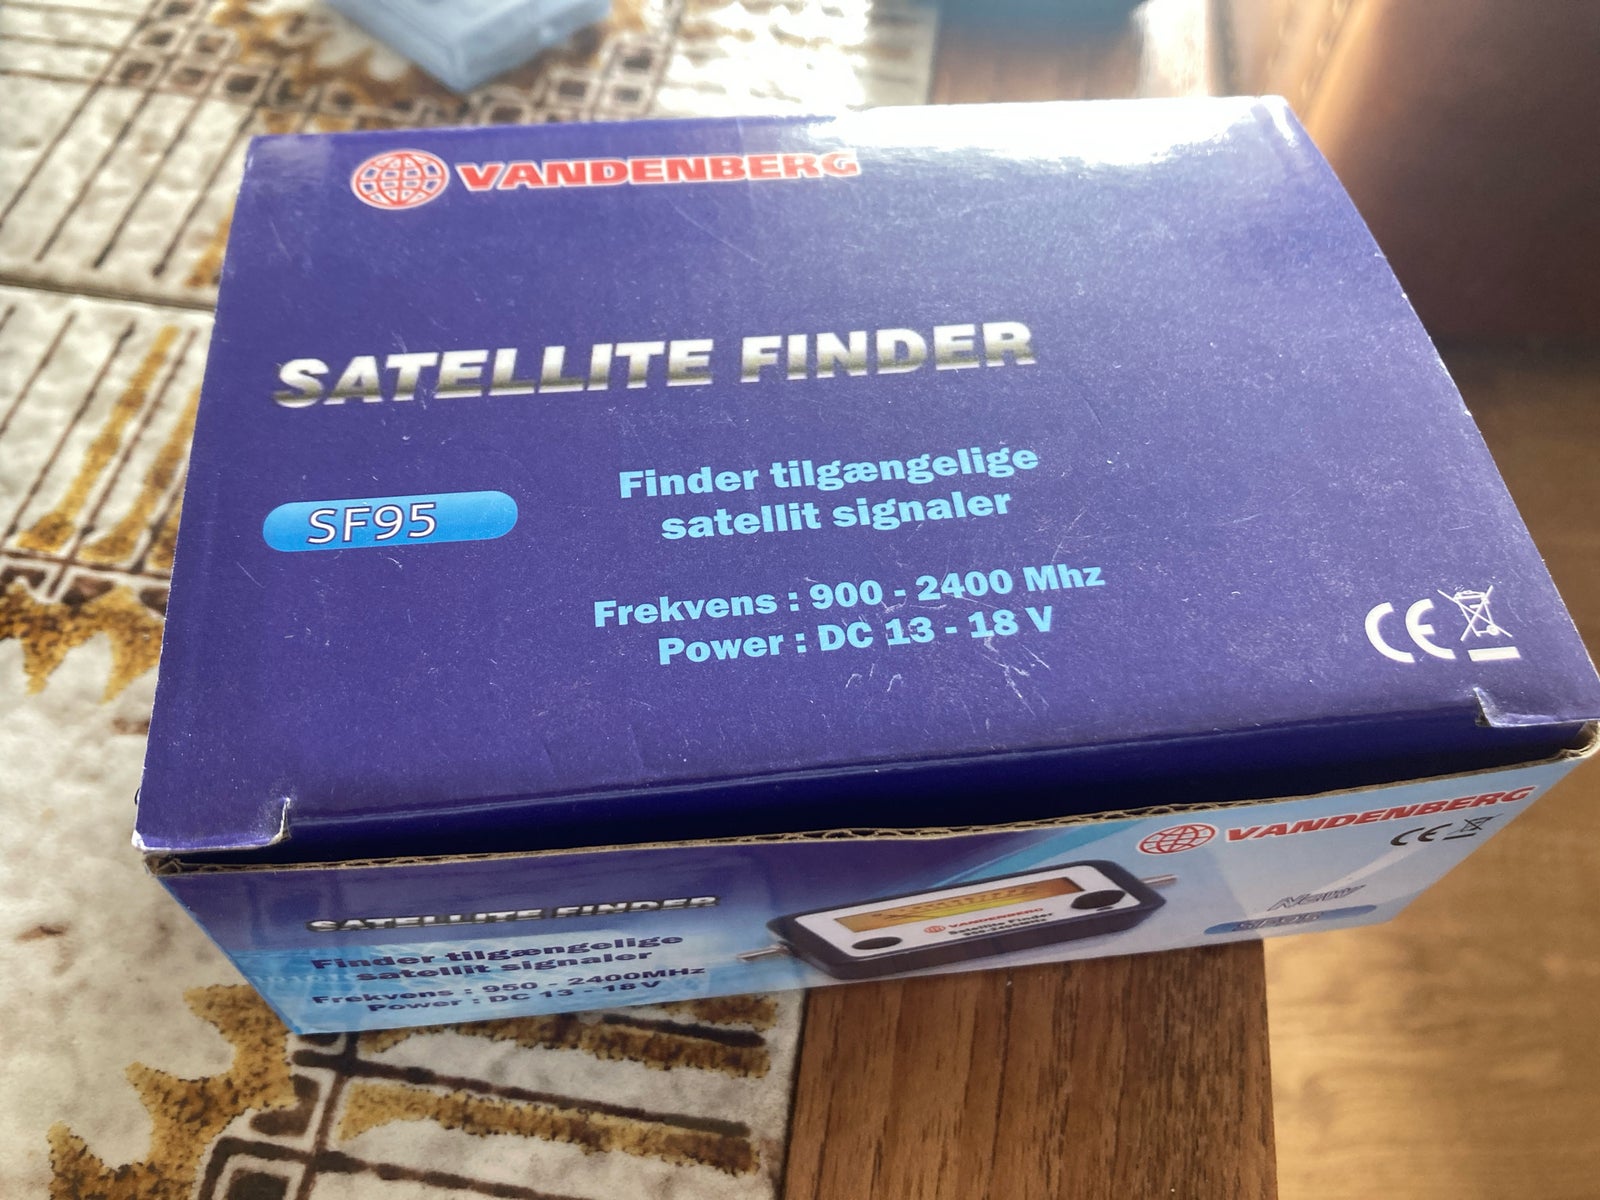 Satellite finder, Perfekt